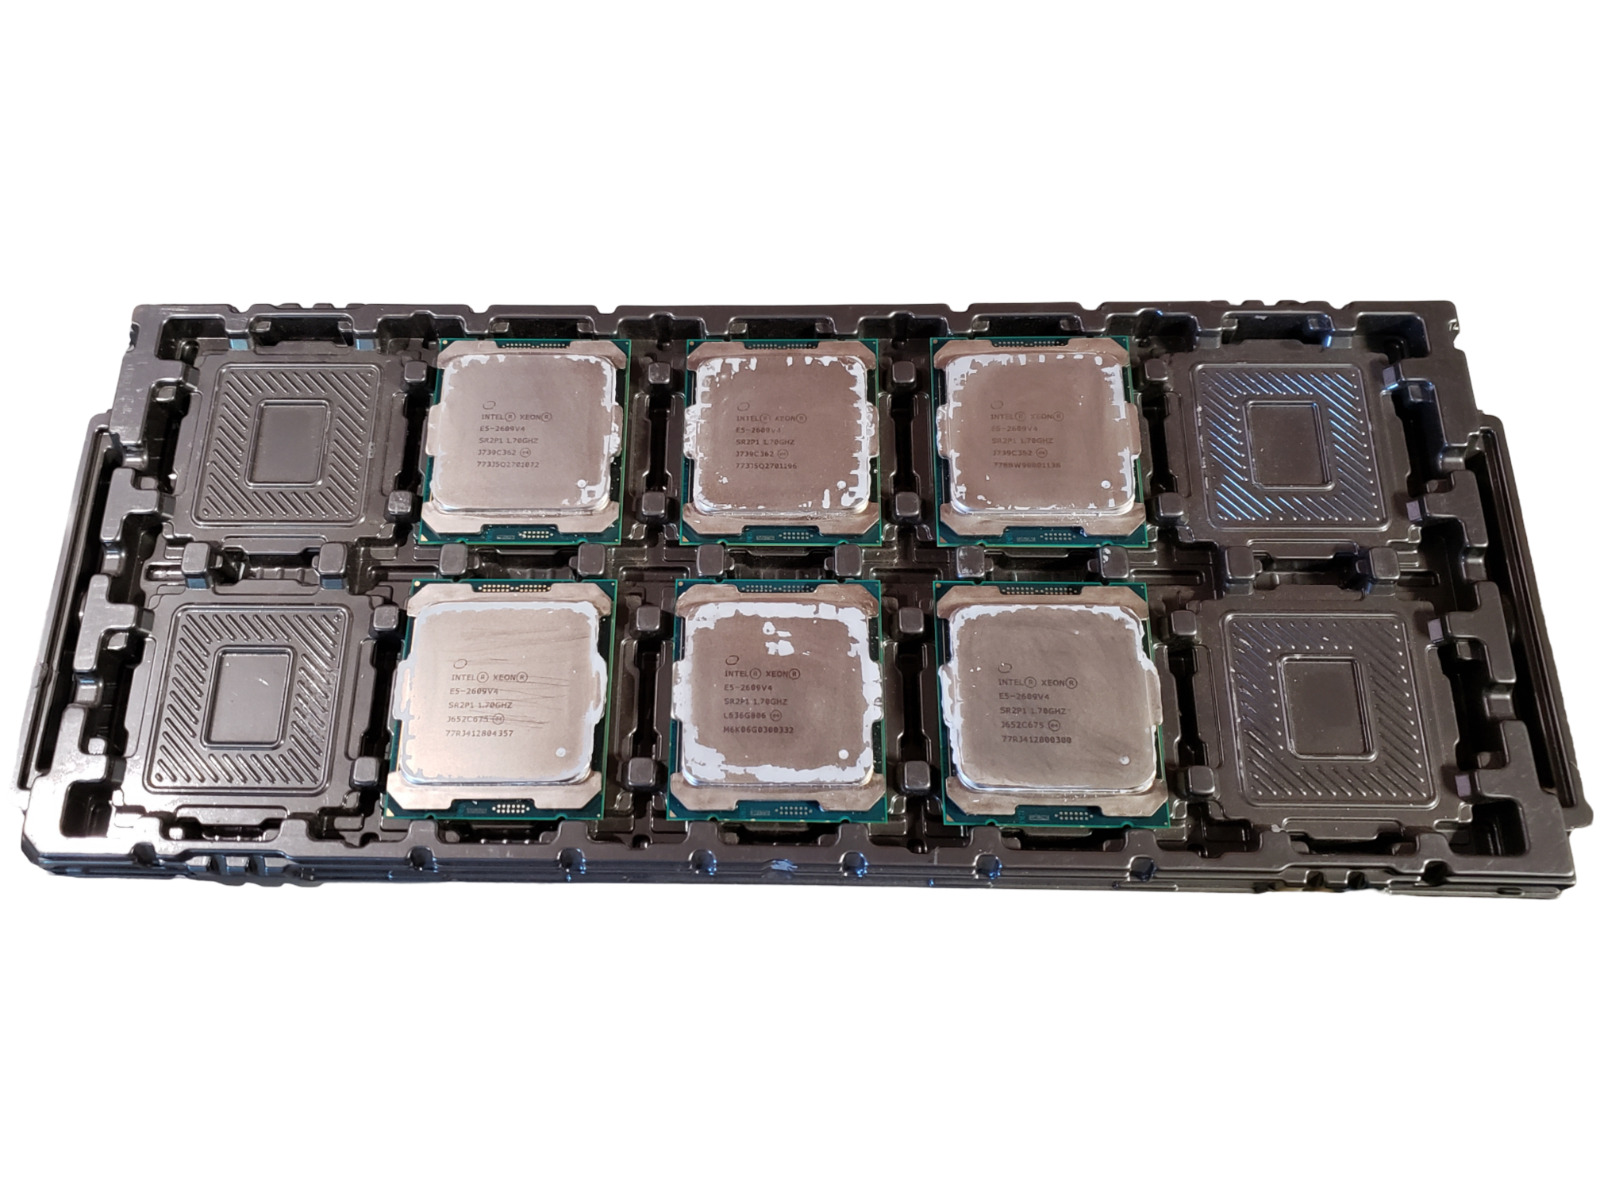 LOT of 6 Intel Xeon E5-2609v4 8 Core 1.70GHz FCLGA2011 Processor